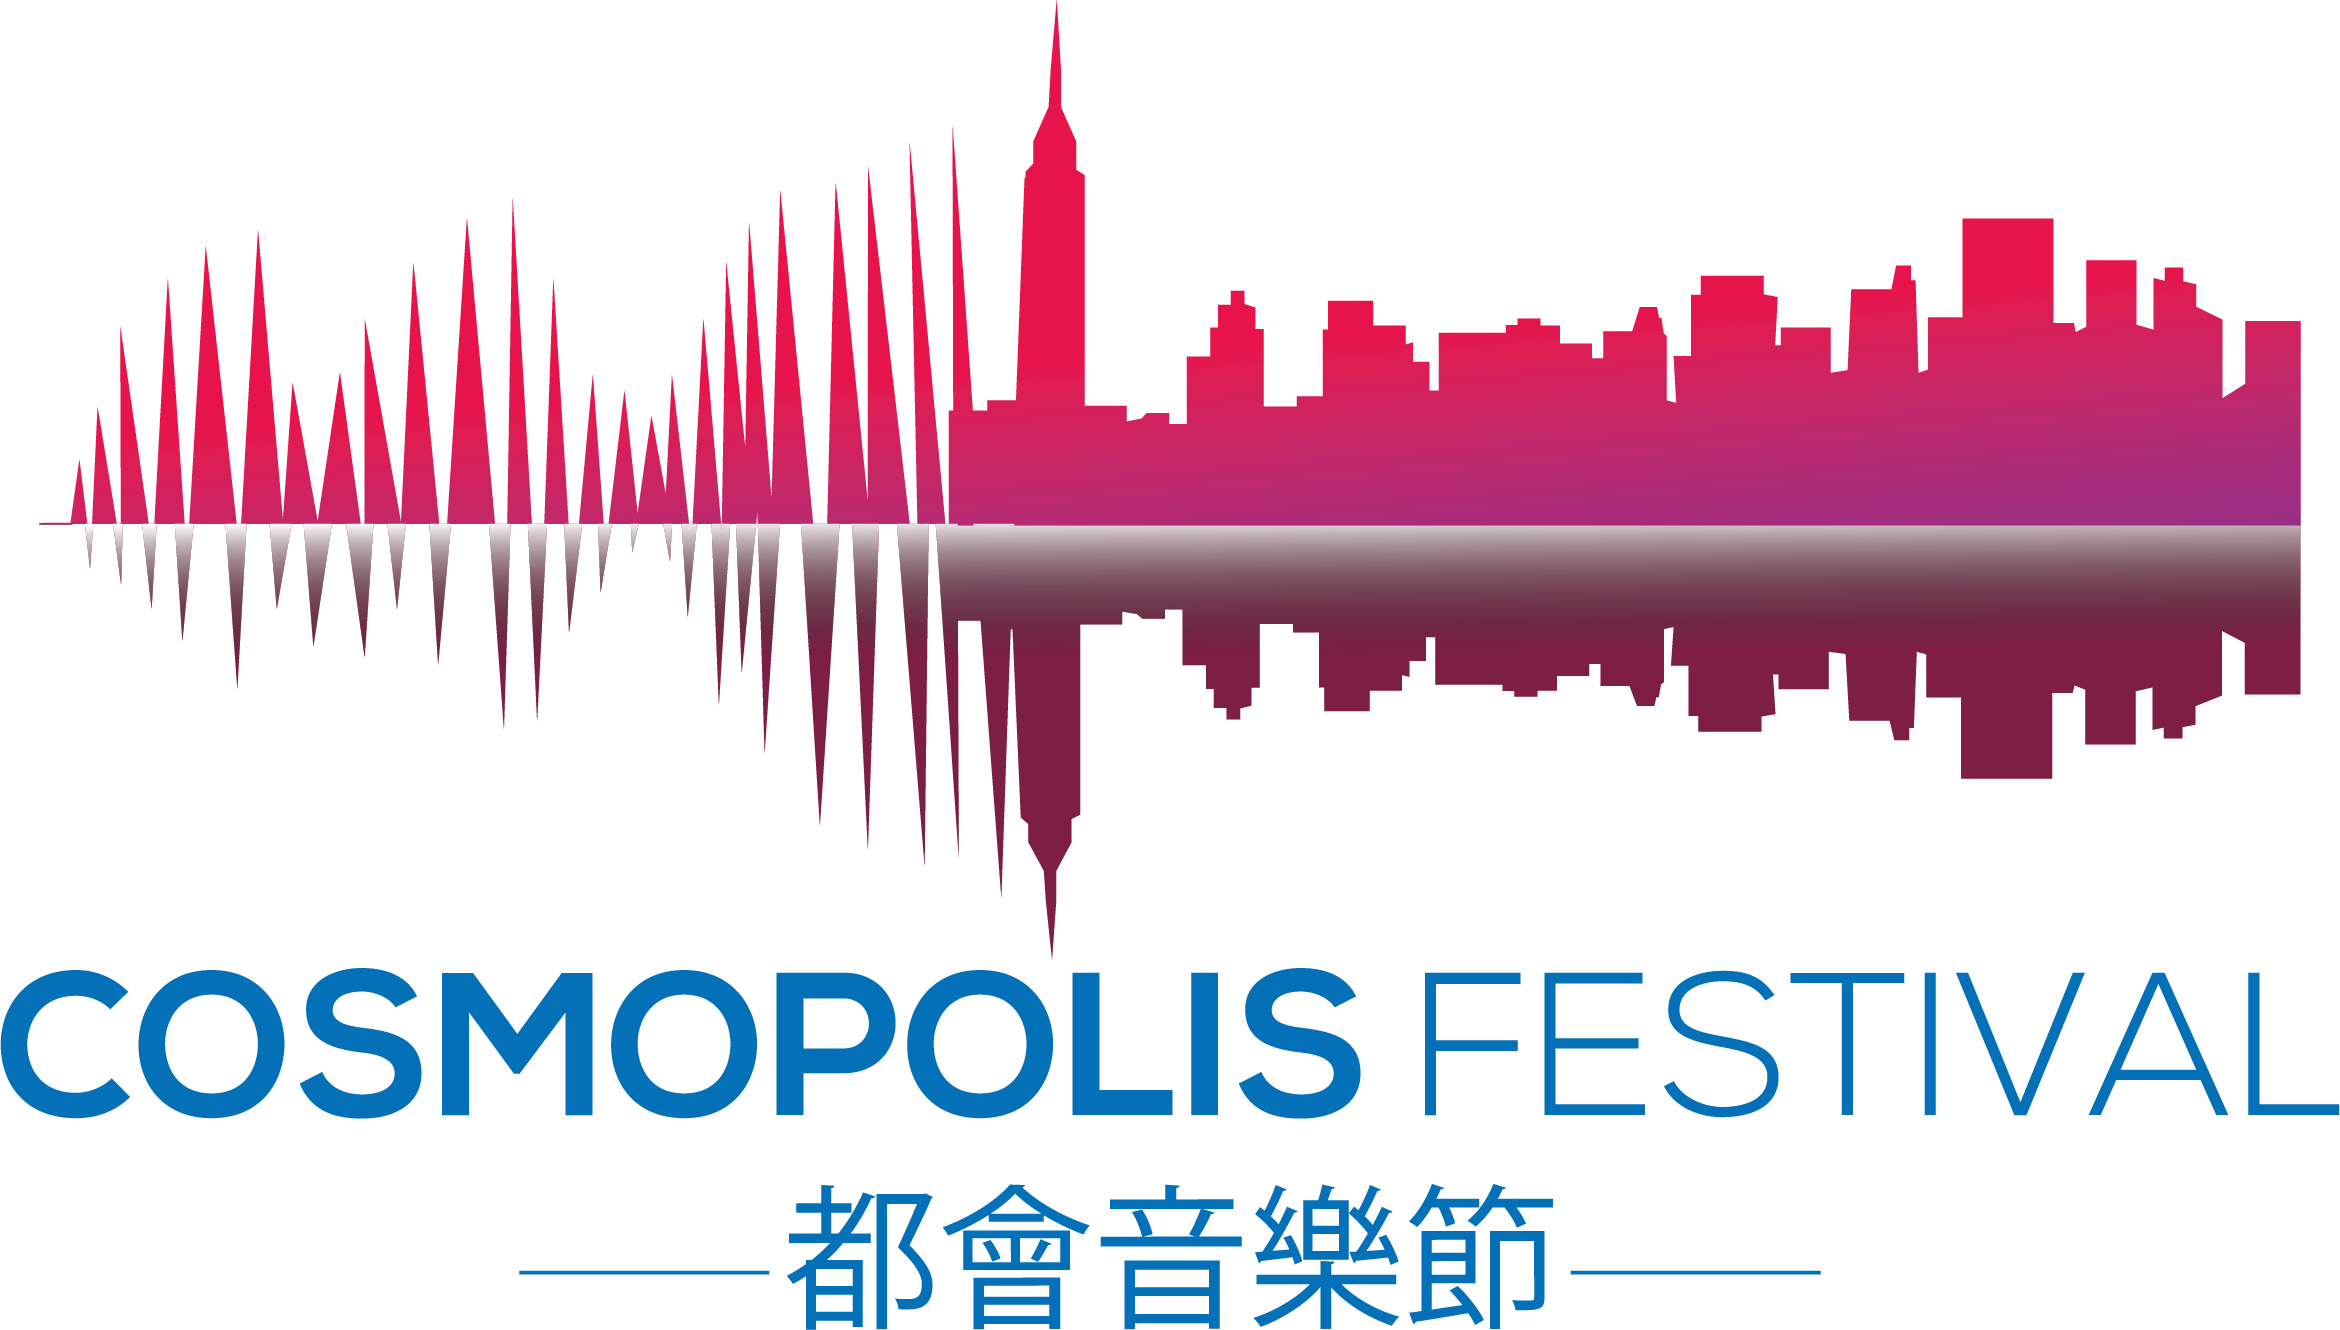 cosmopolisfestival logo